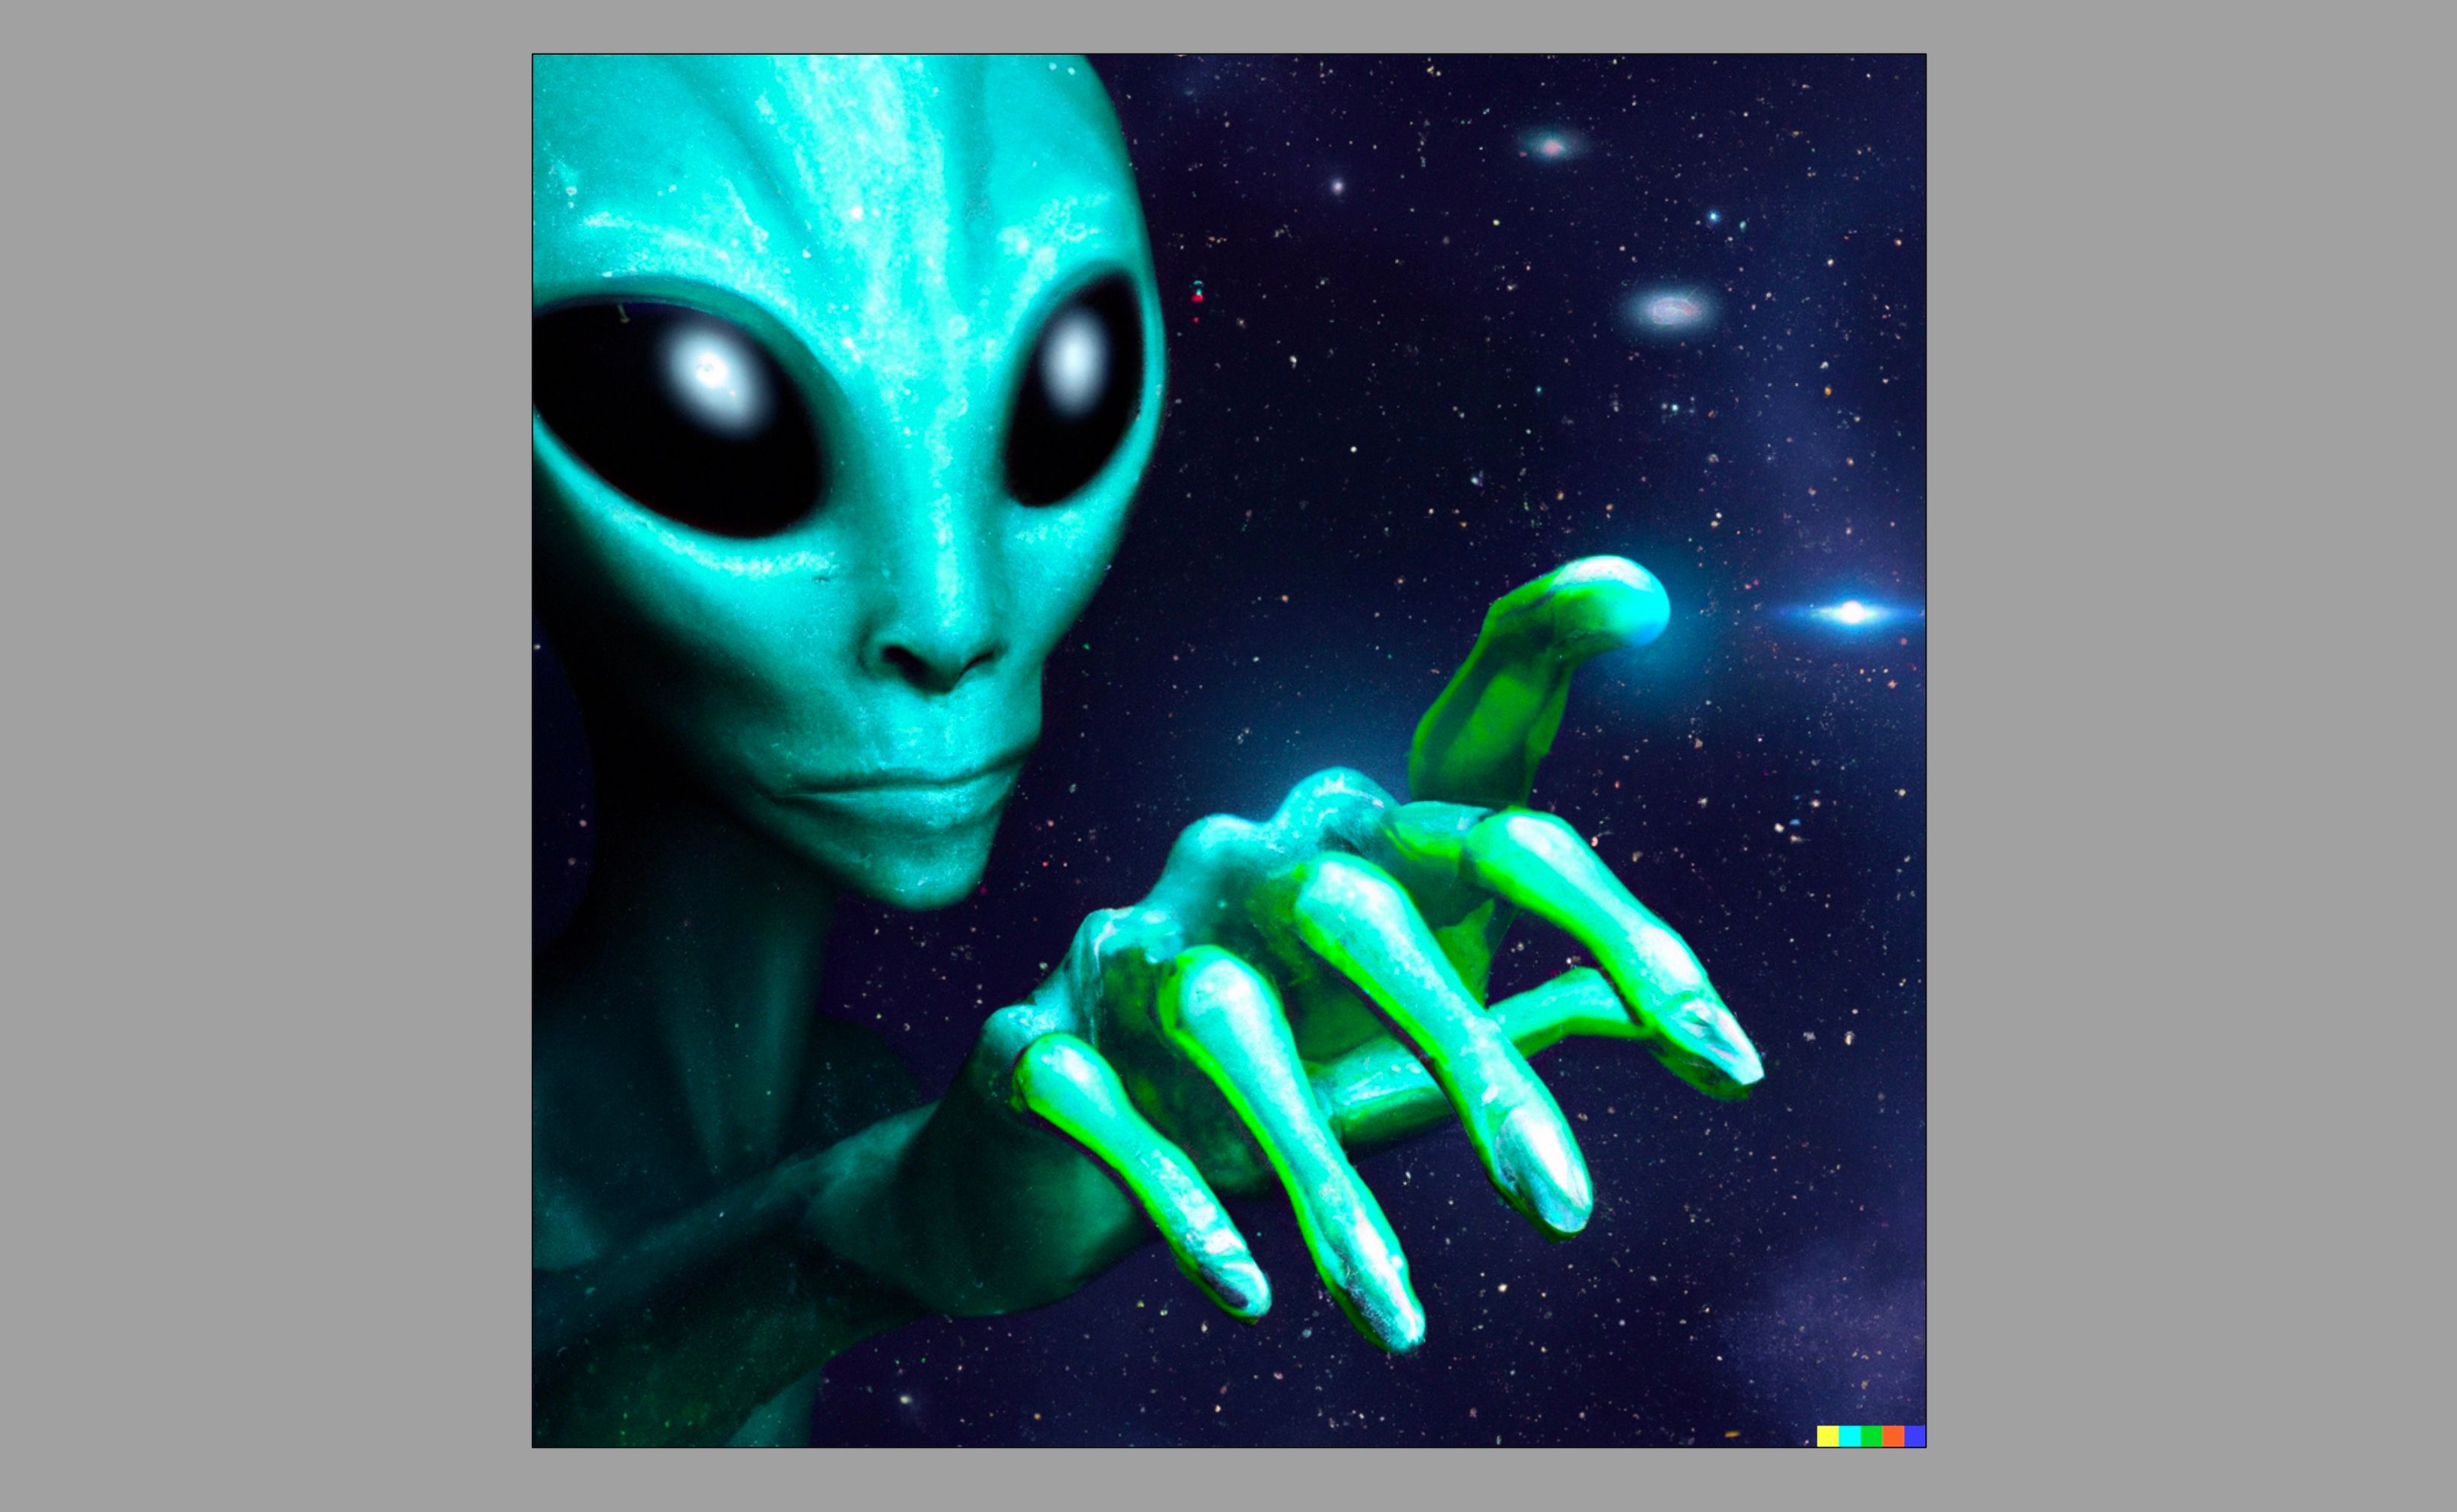 Imagem gerada por IA de um alienígena estendendo a mão no espaço